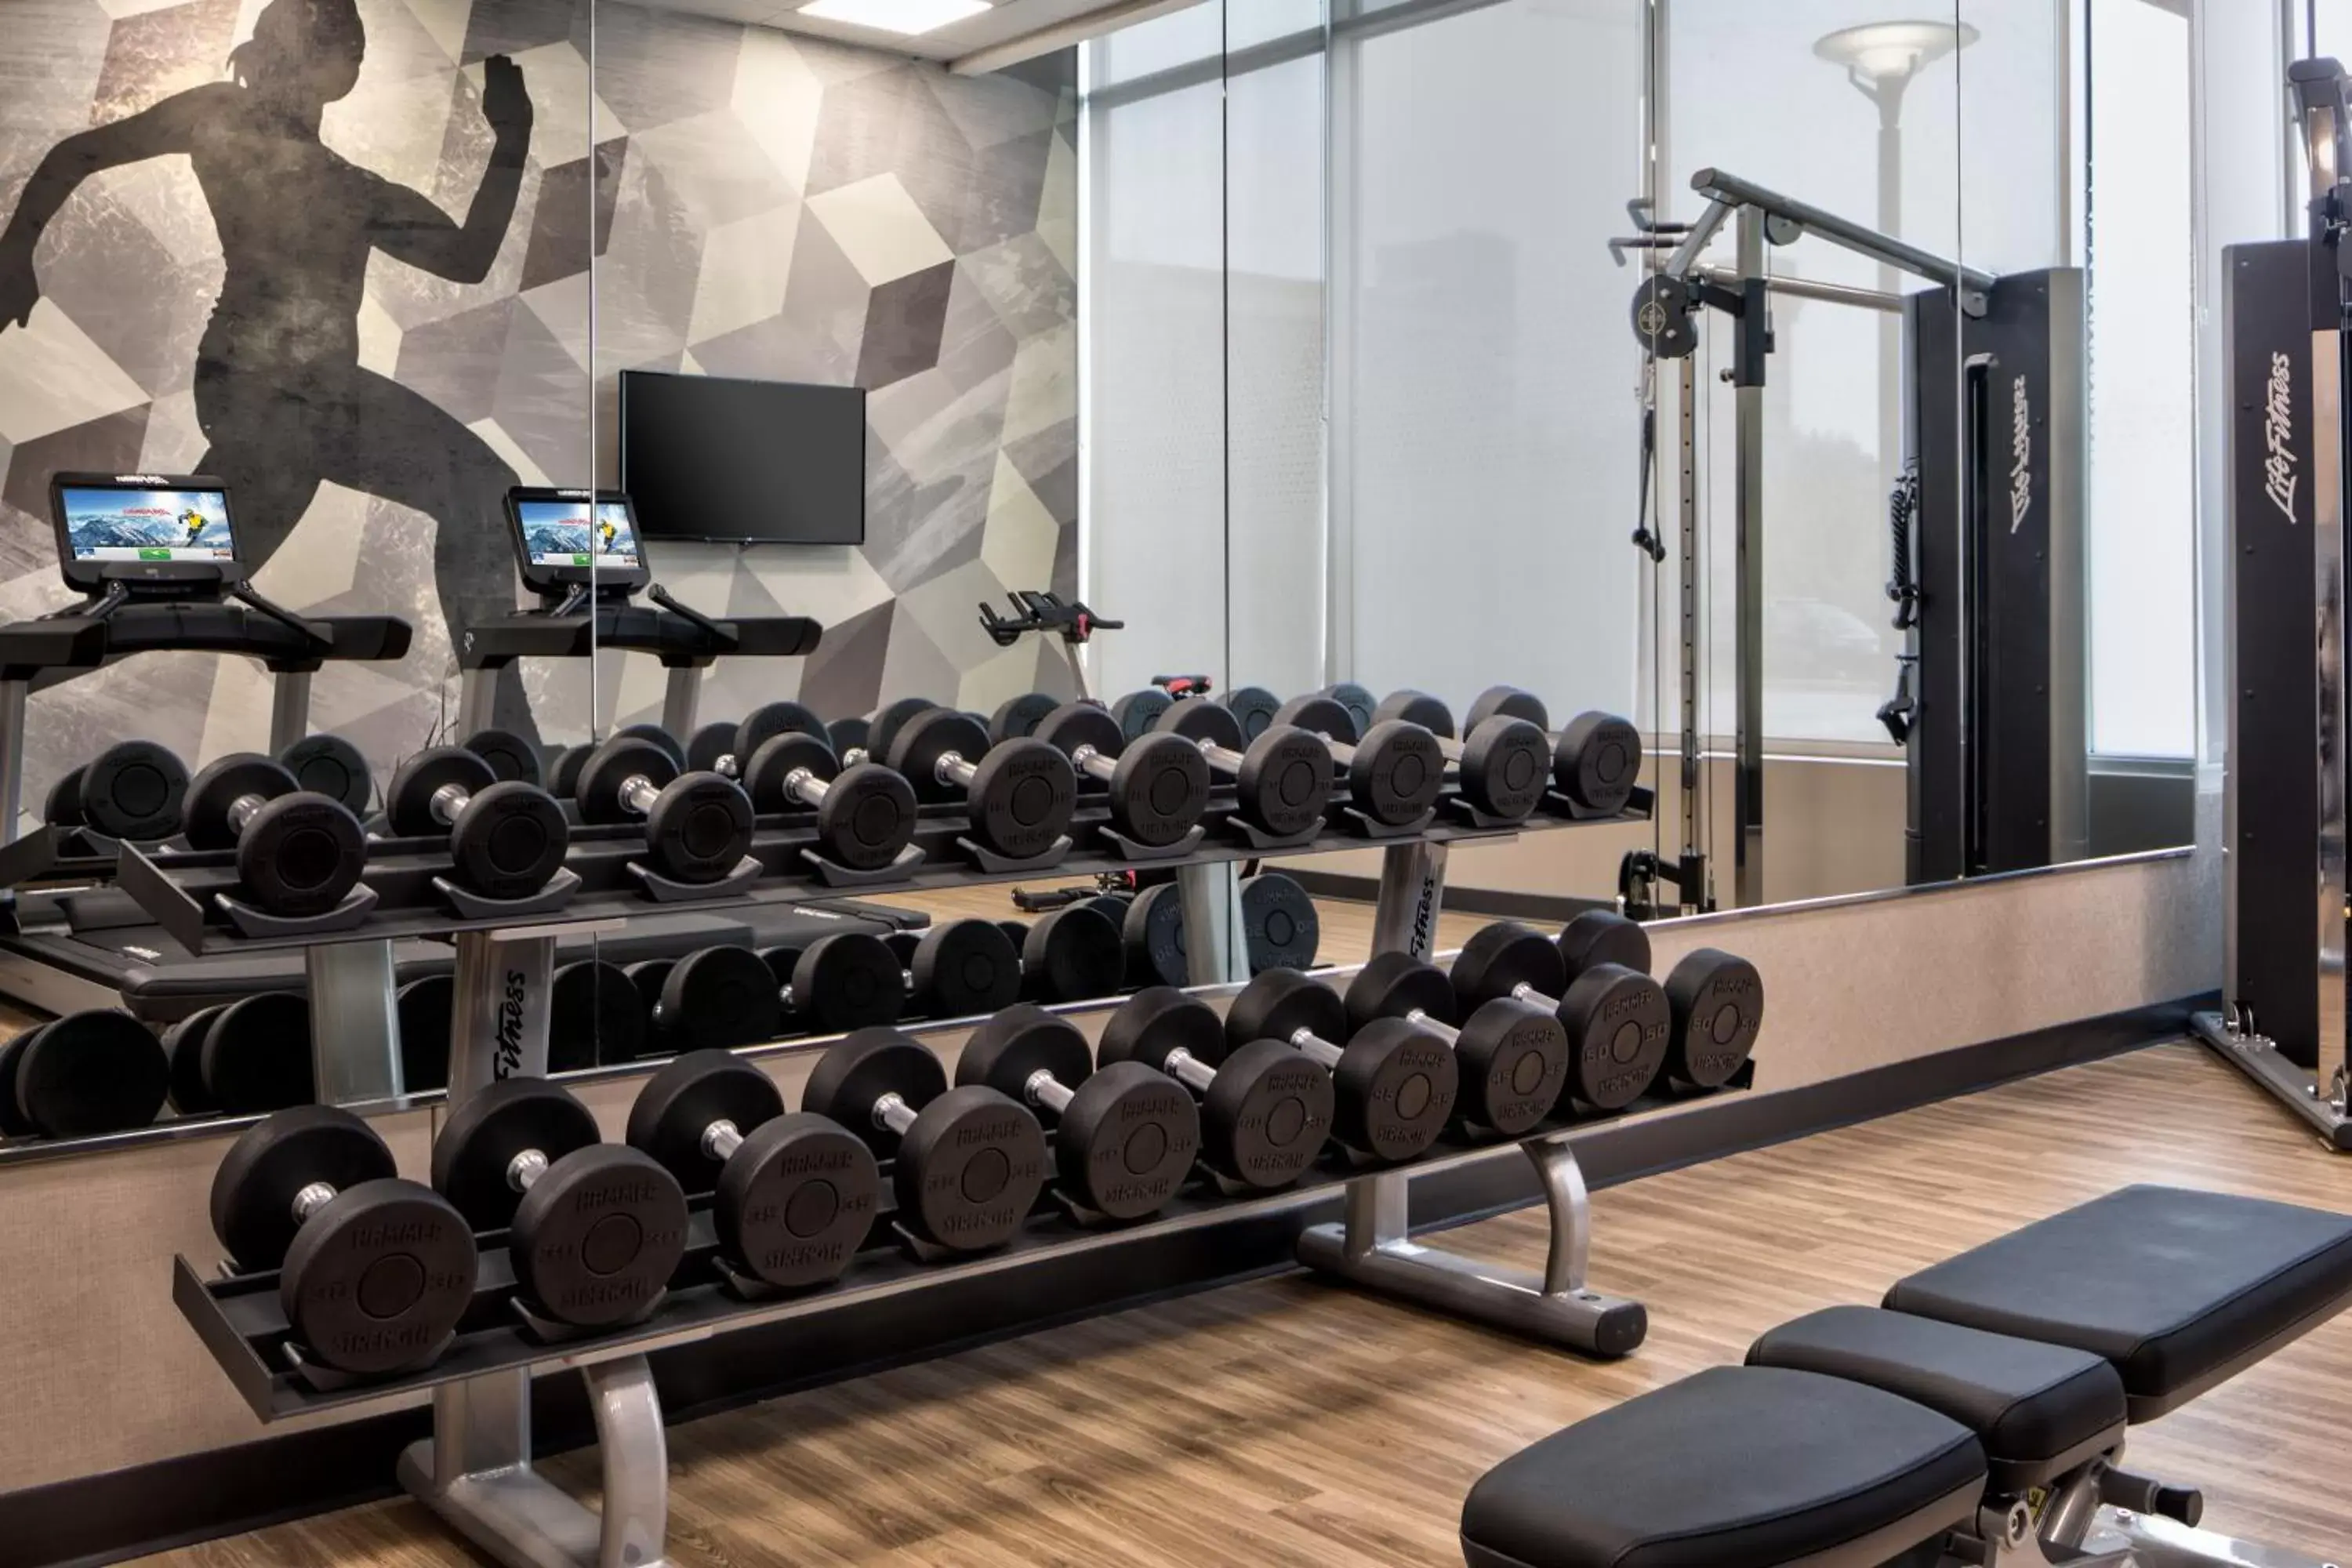 Fitness centre/facilities, Fitness Center/Facilities in Hyatt House Denver Aurora